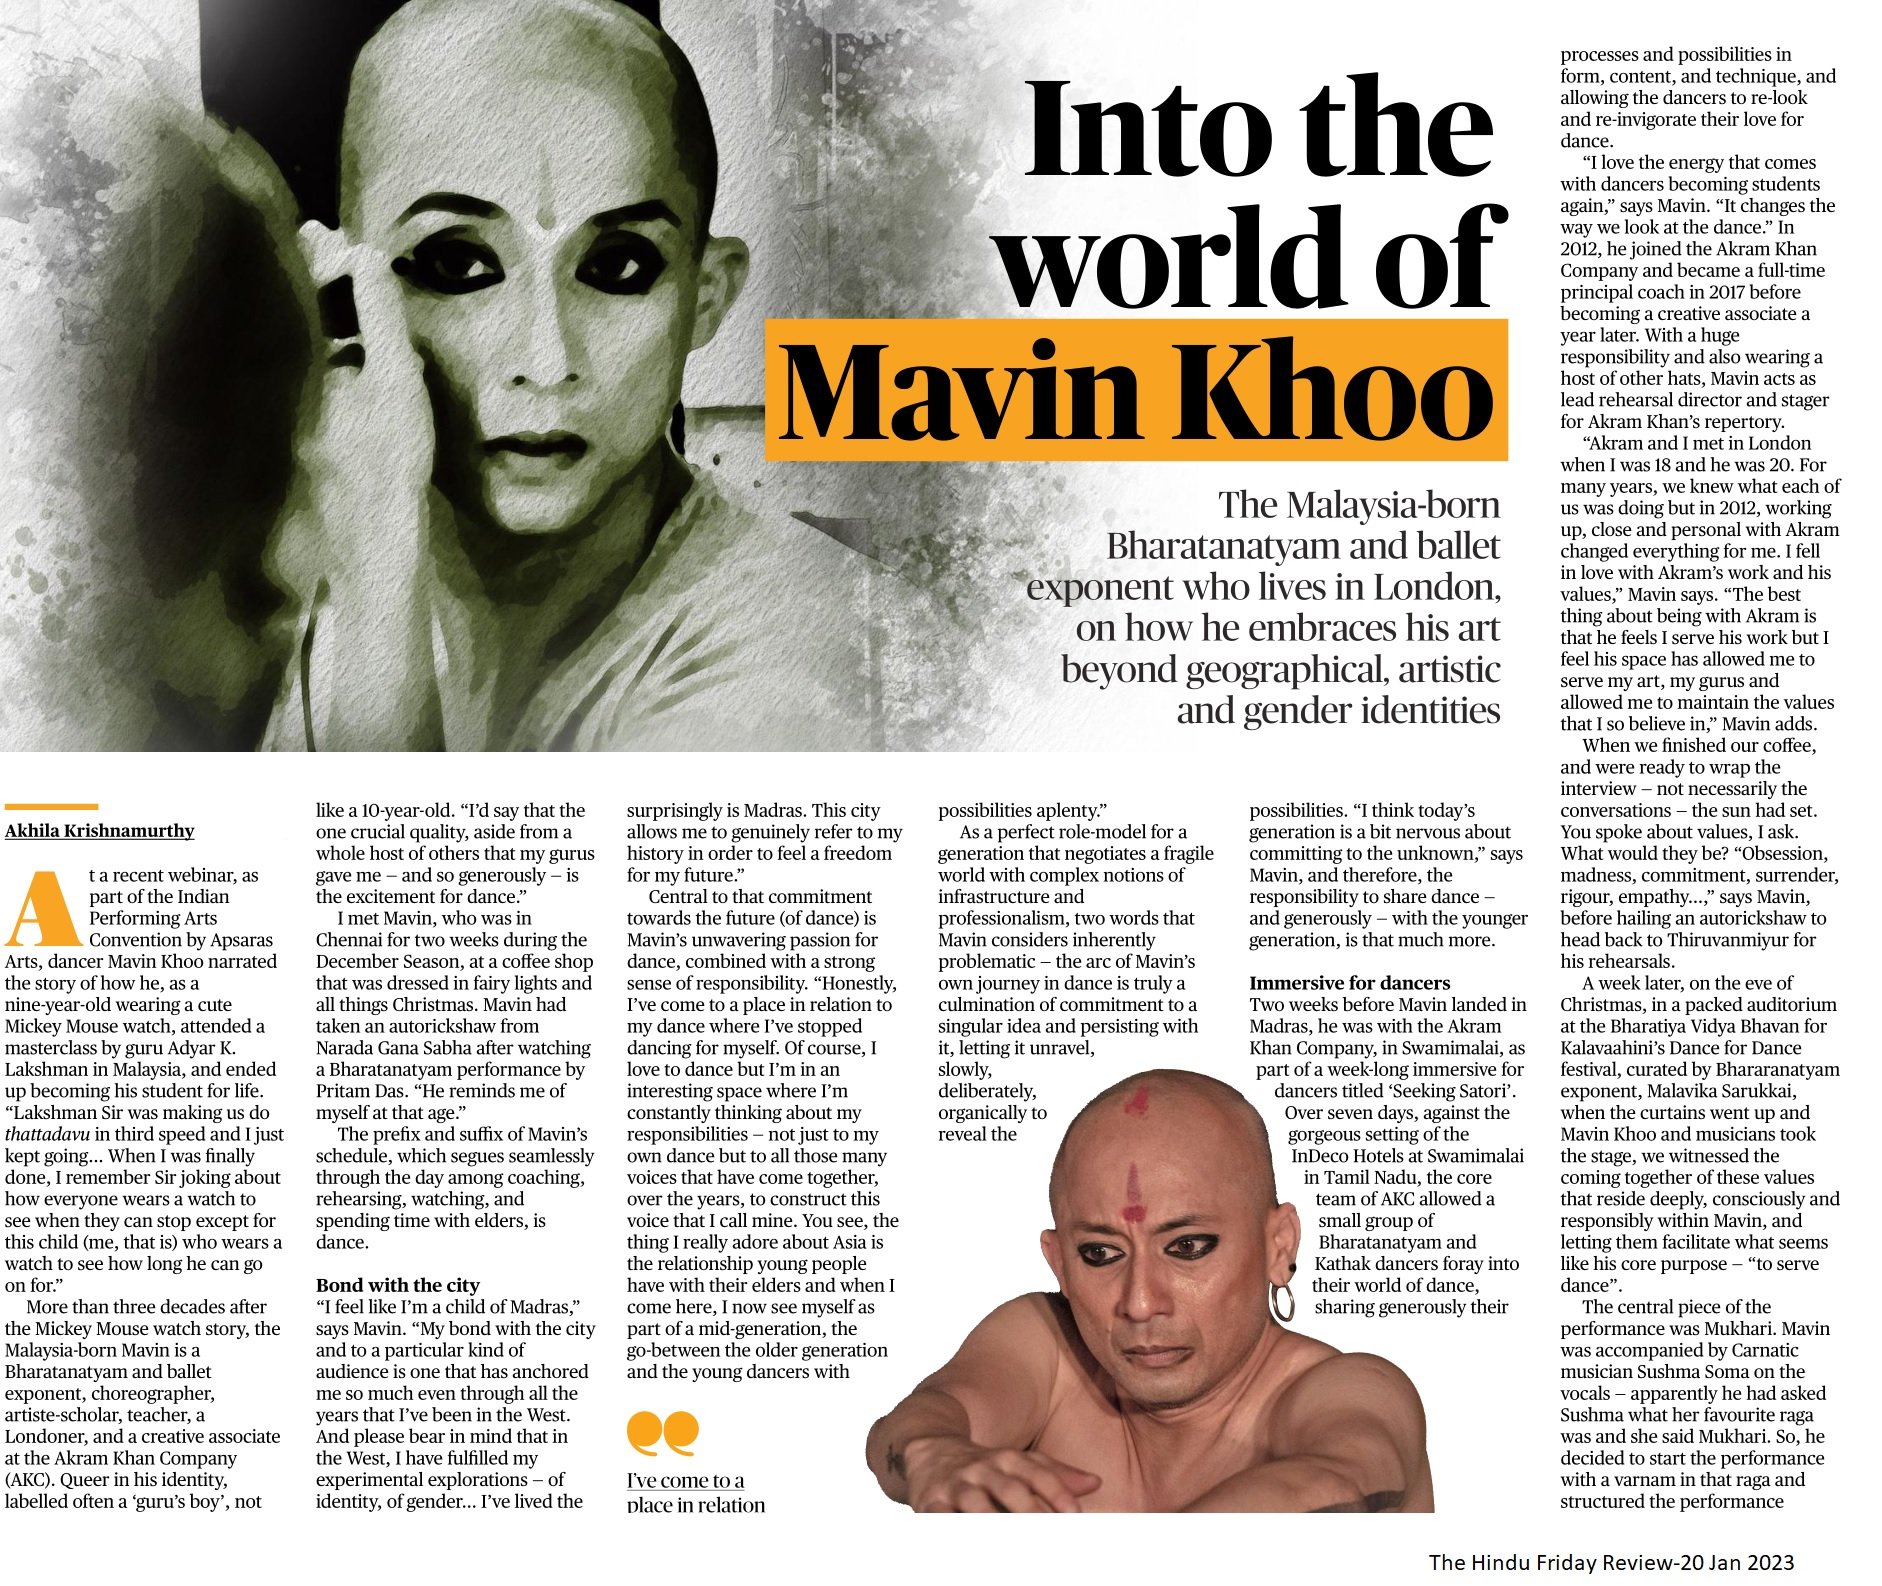 Into the world of Mavin Khoo - Akhila Krishnamurthy